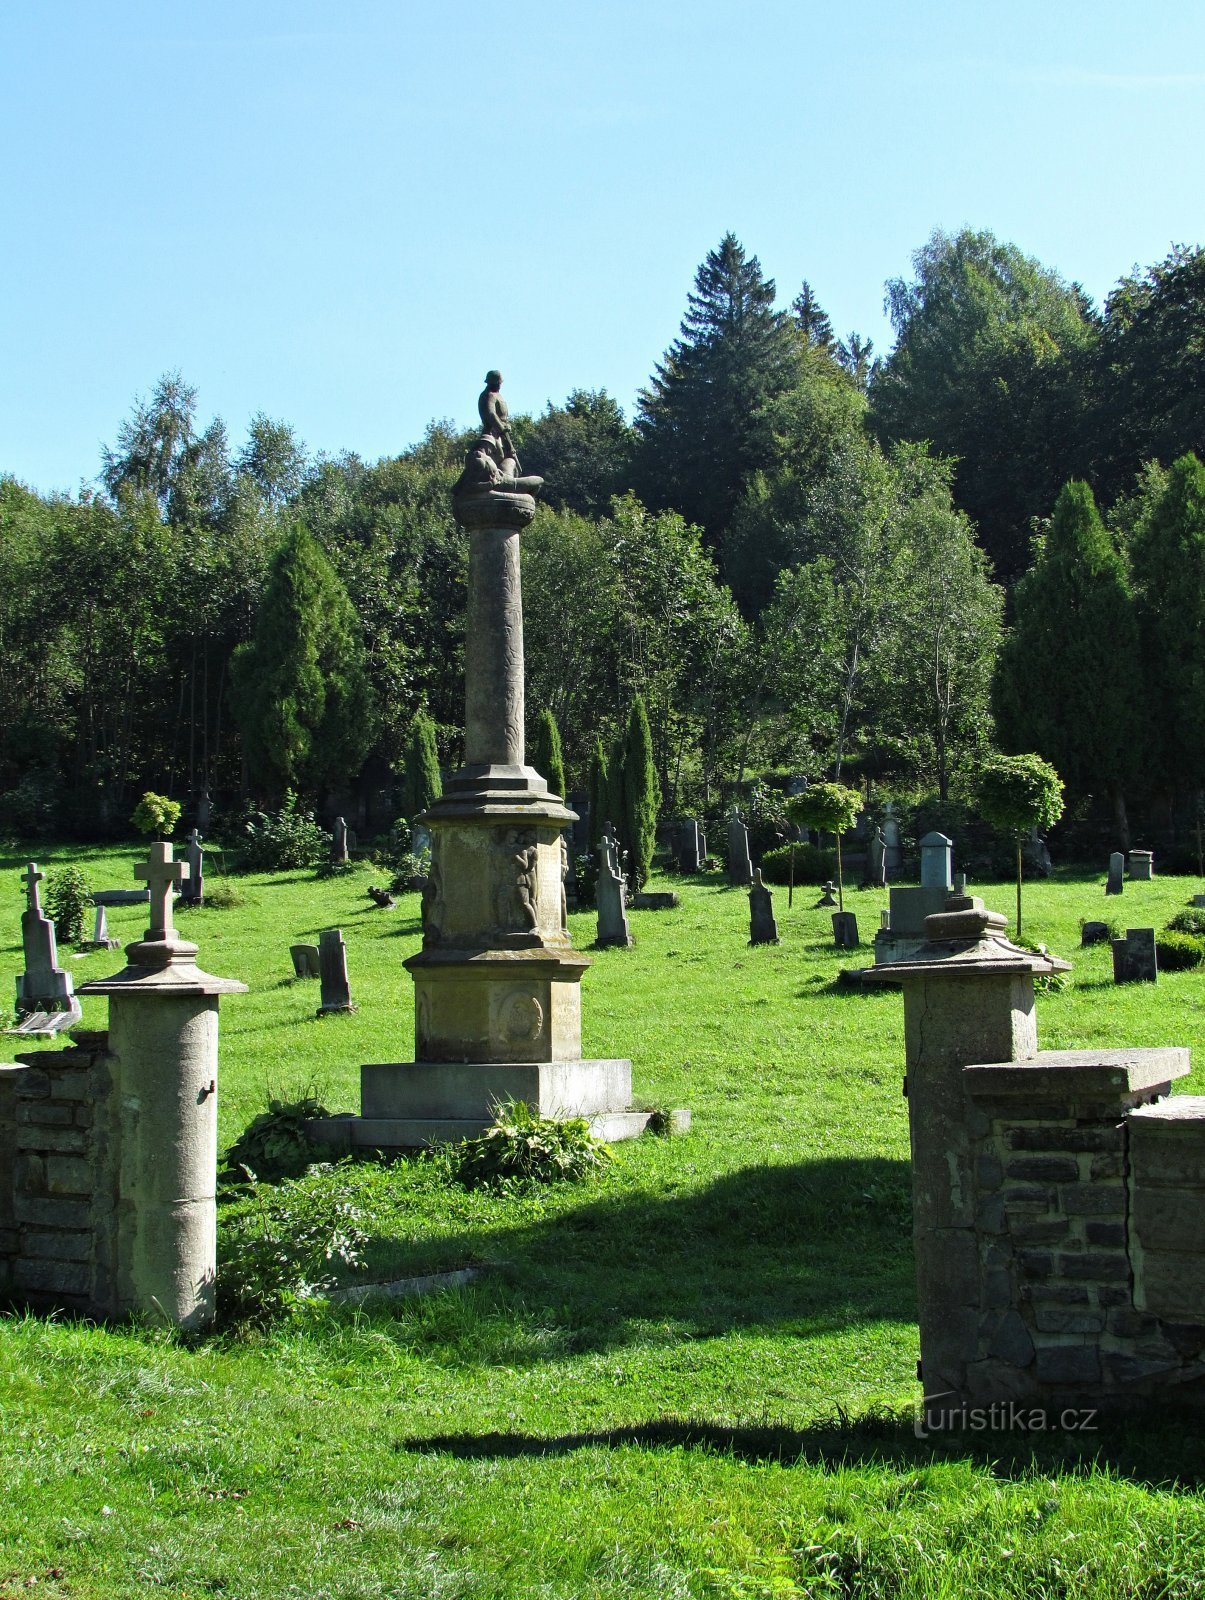 Branná - hautausmaa